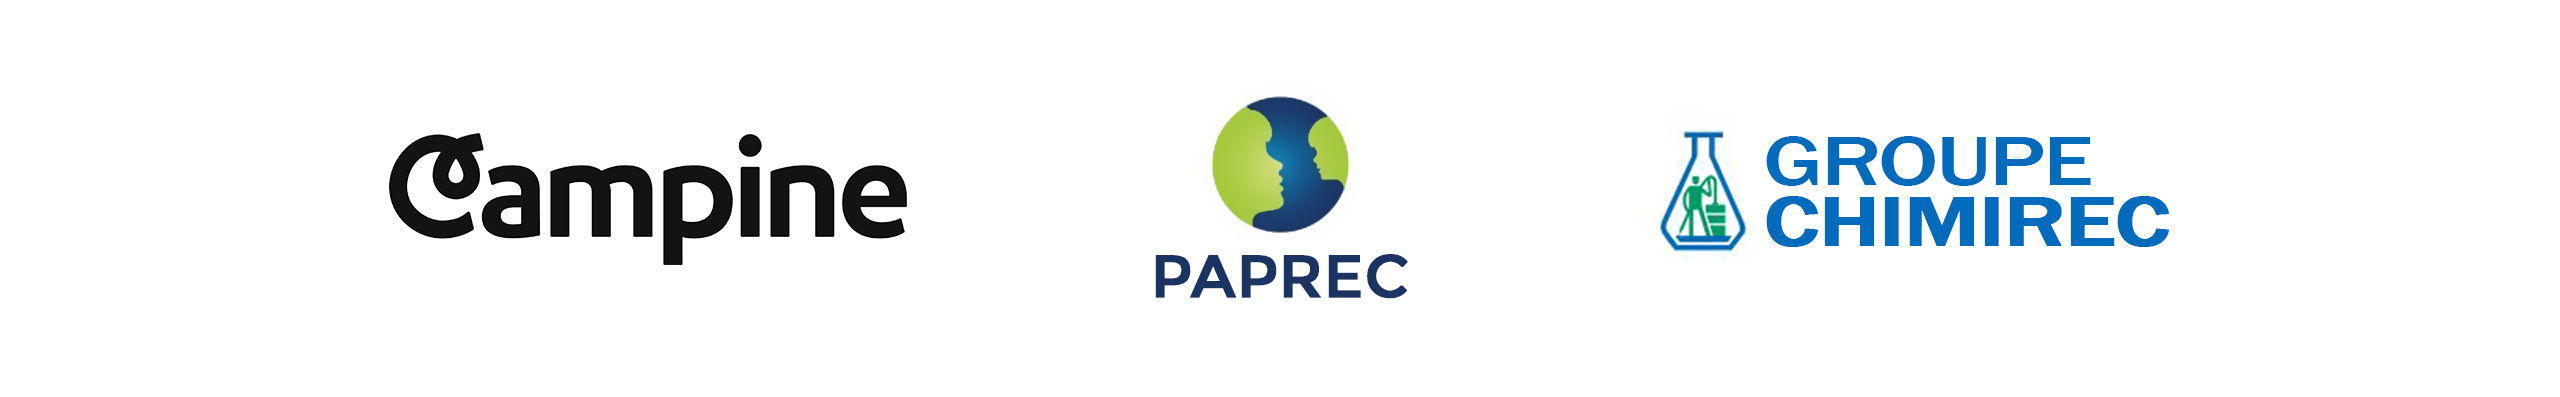 Nos éco-organismes partenaires Campine, PAPREC et Groupe CHIMIREC